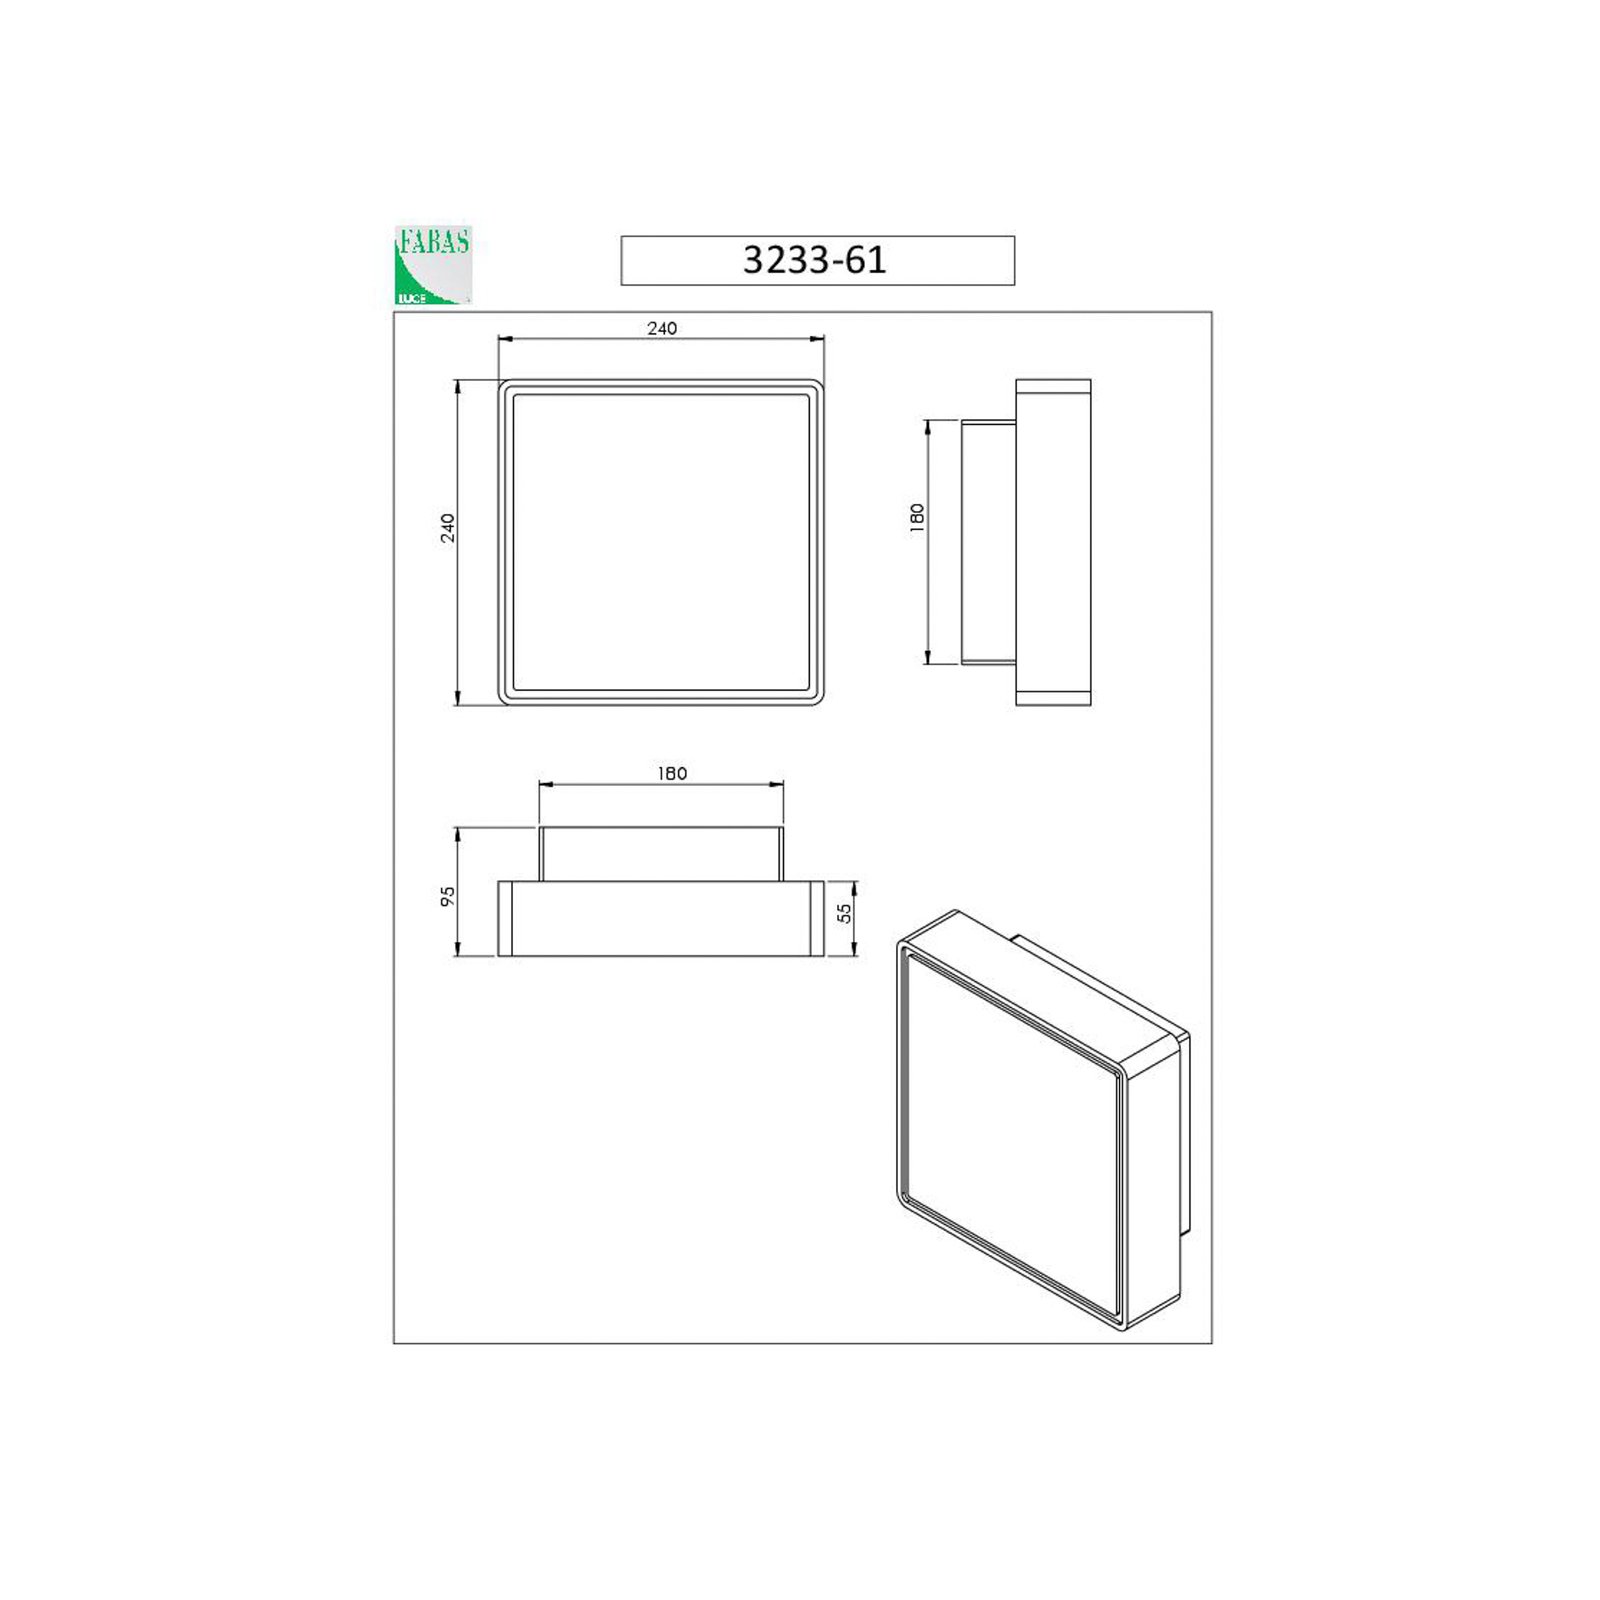 Φωτιστικό τοίχου Oban, 24 cm x 24 cm, 1 x E27, λευκό, IP65